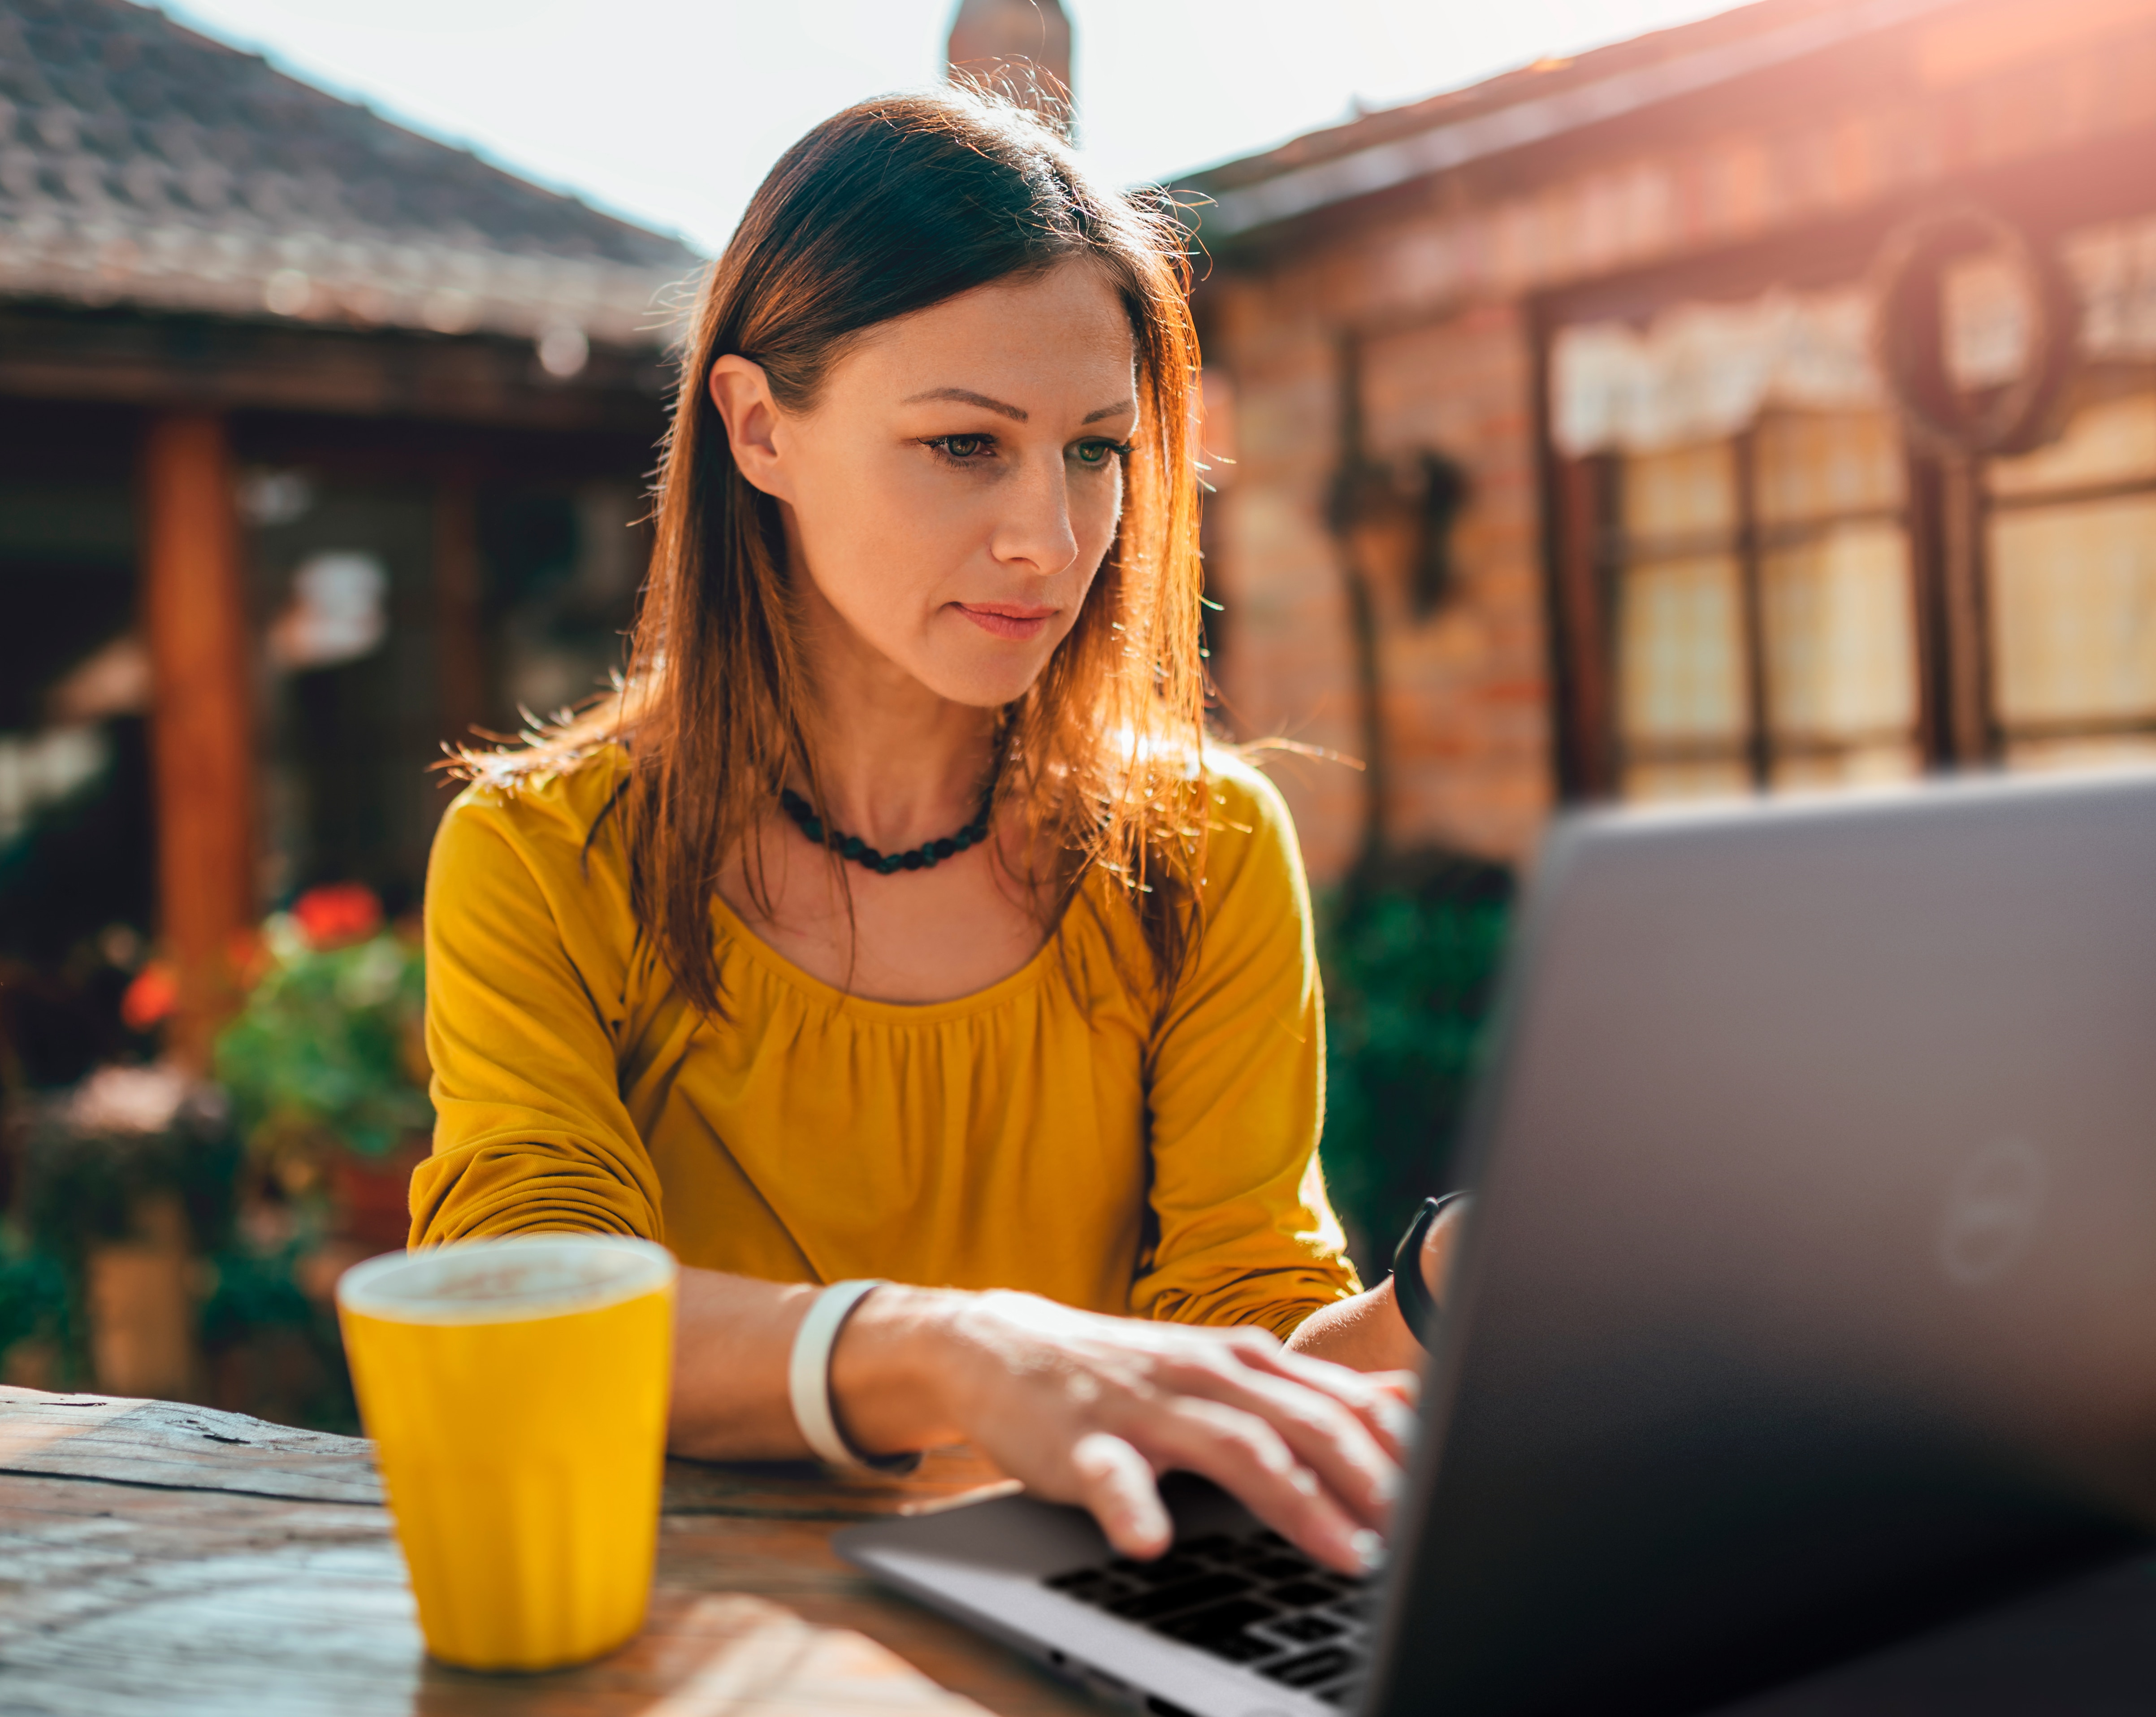 Image d’une femme assise qui porte un chandail jaune et qui utilise un ordinateur portable Dell placé sur une table devant elle aux côtés d’une tasse de café.